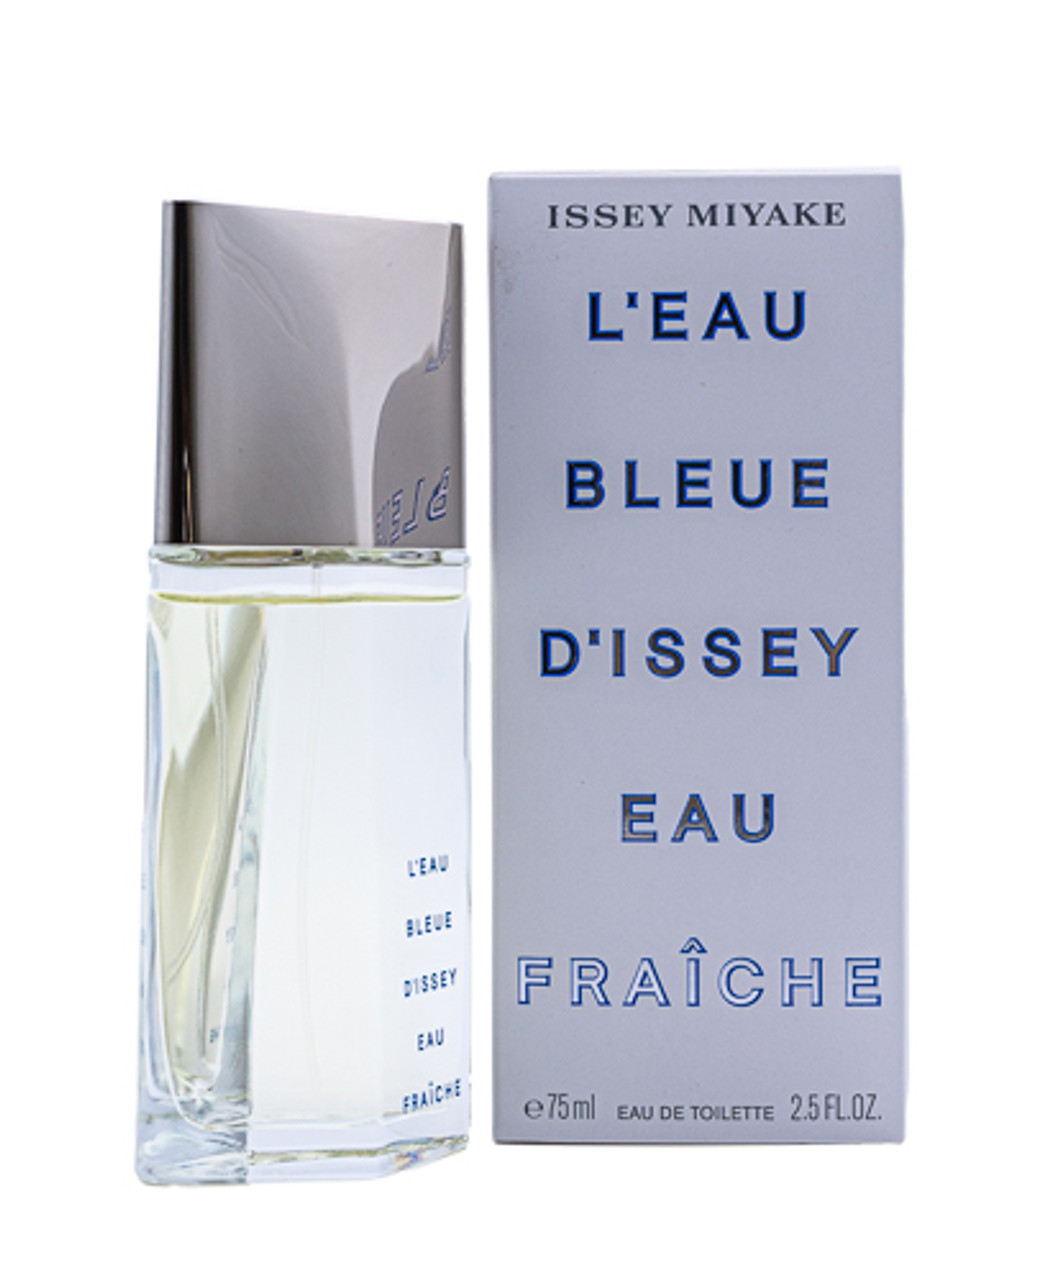 Issey Miyake A Drop d'Issey Eau de Parfum Fraiche